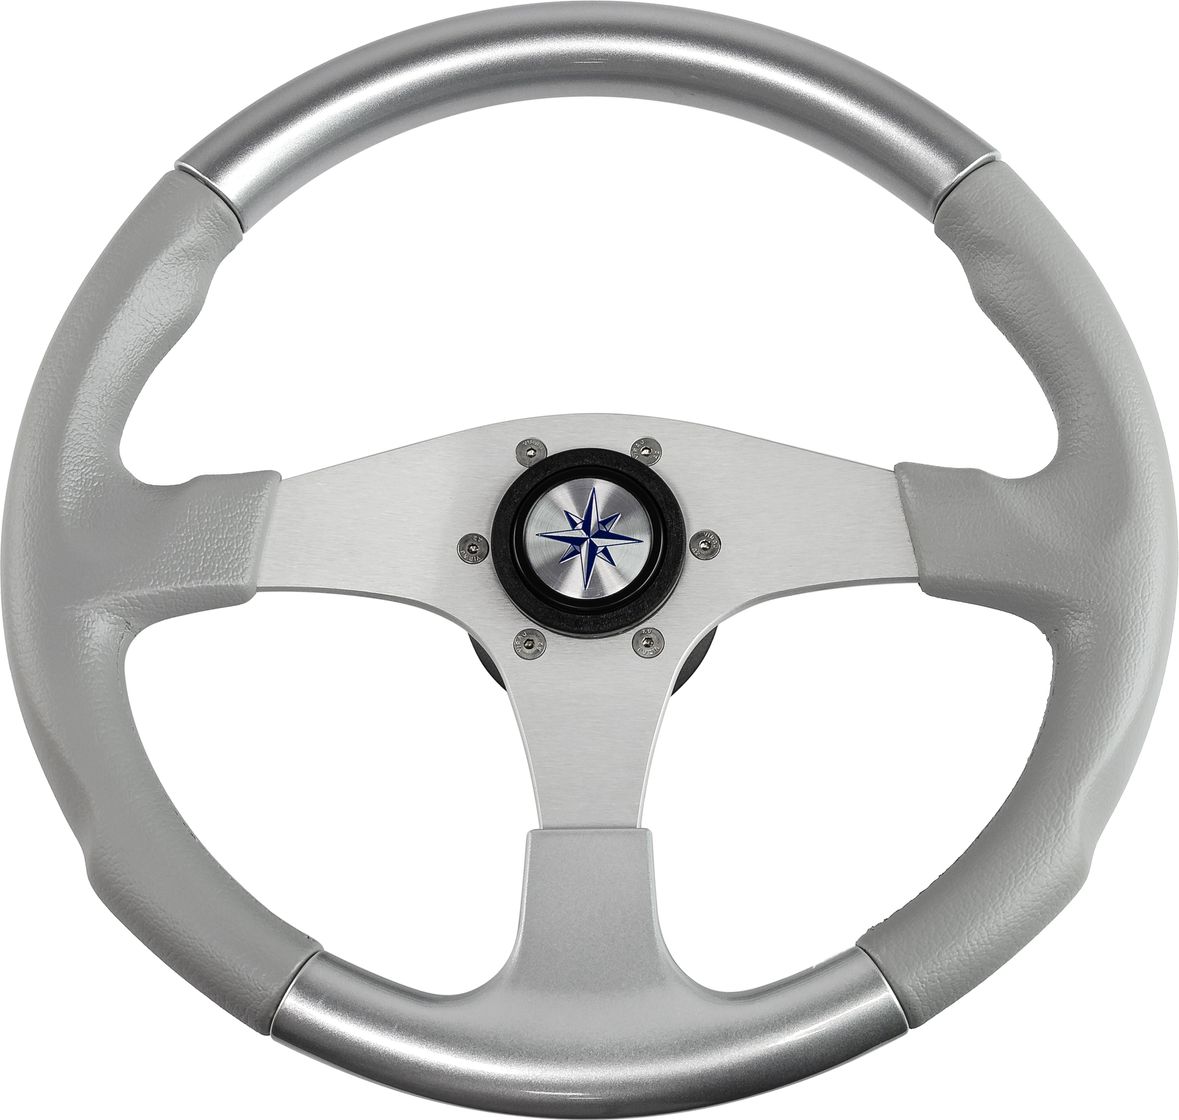 Рулевое колесо EVO MARINE 2 обод серосеребряный, спицы серебряные д. 355 мм VN850003-93 рулевое колесо delfino обод серый спицы серебряные д 340 мм vn70401 03